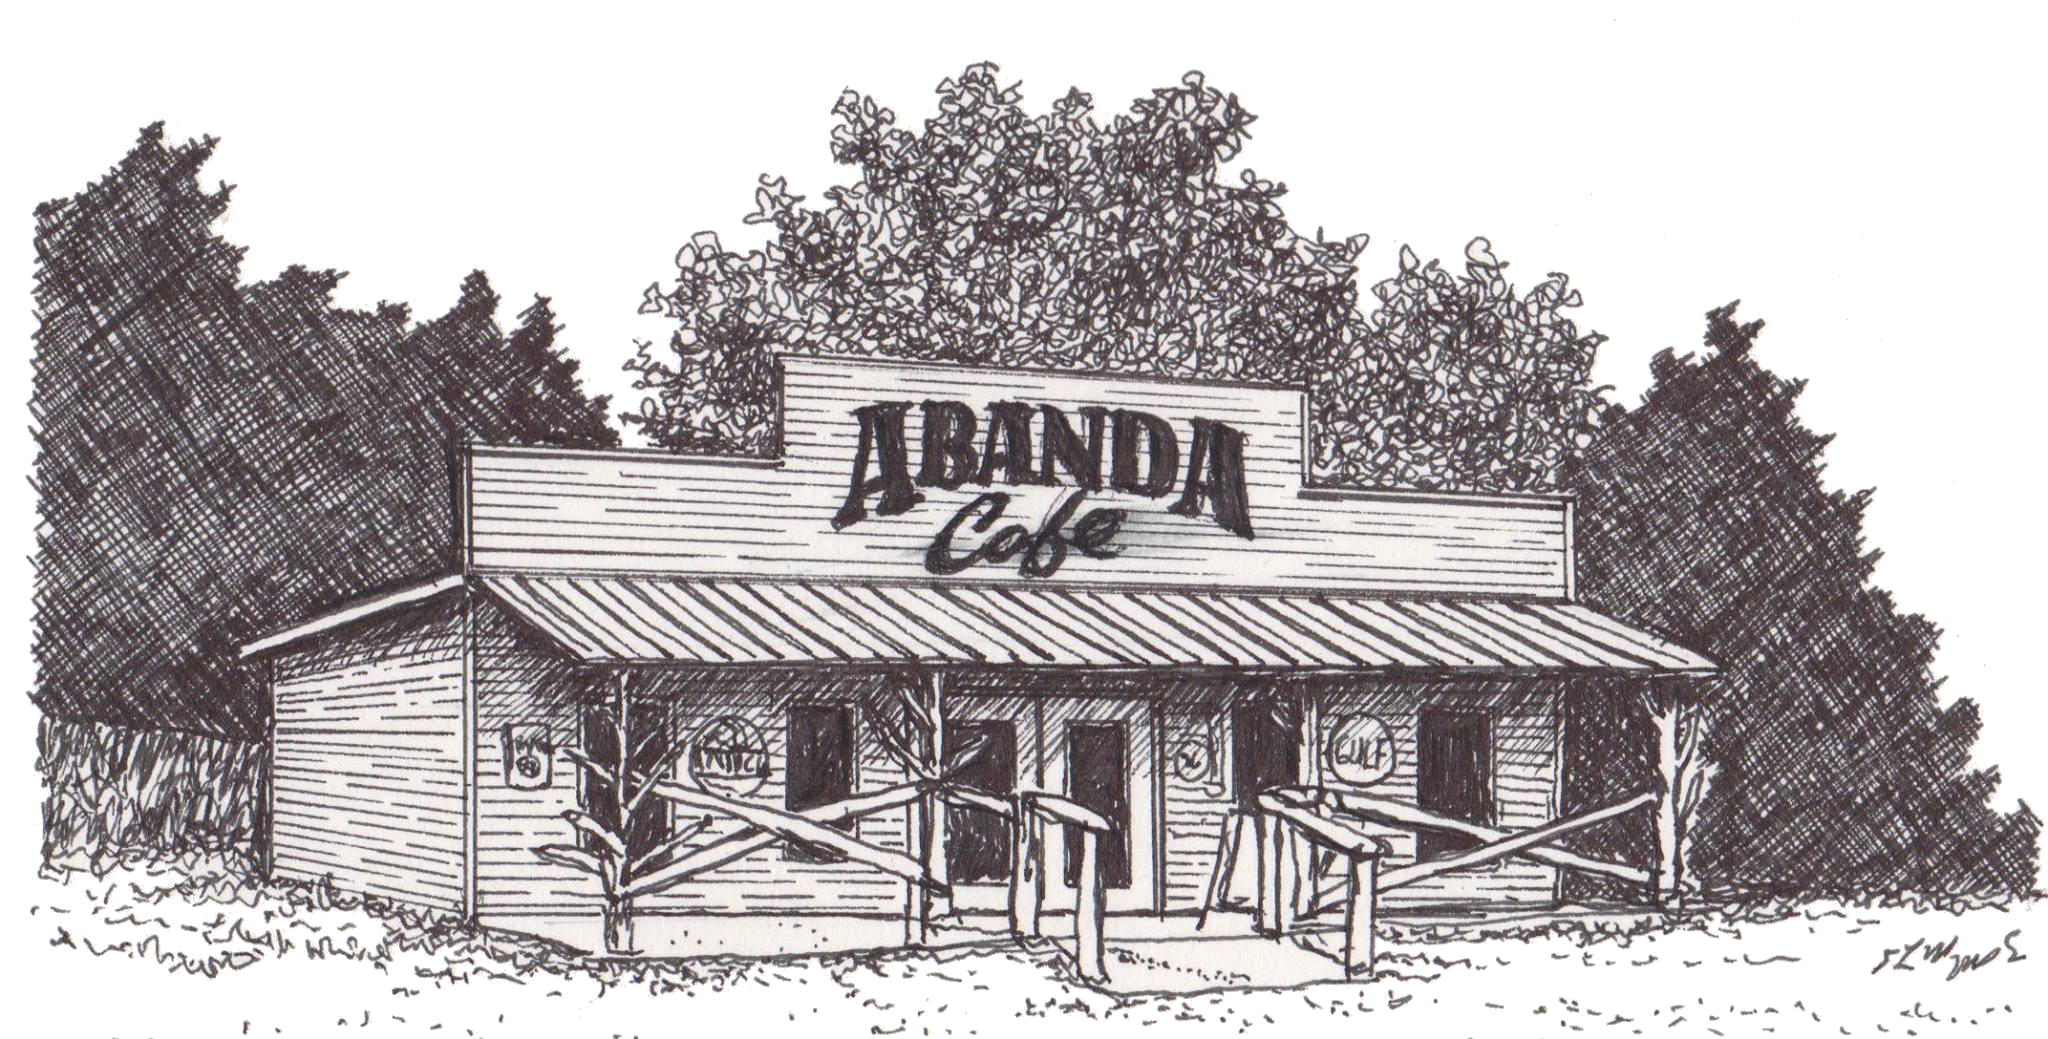 Abanda Cafe